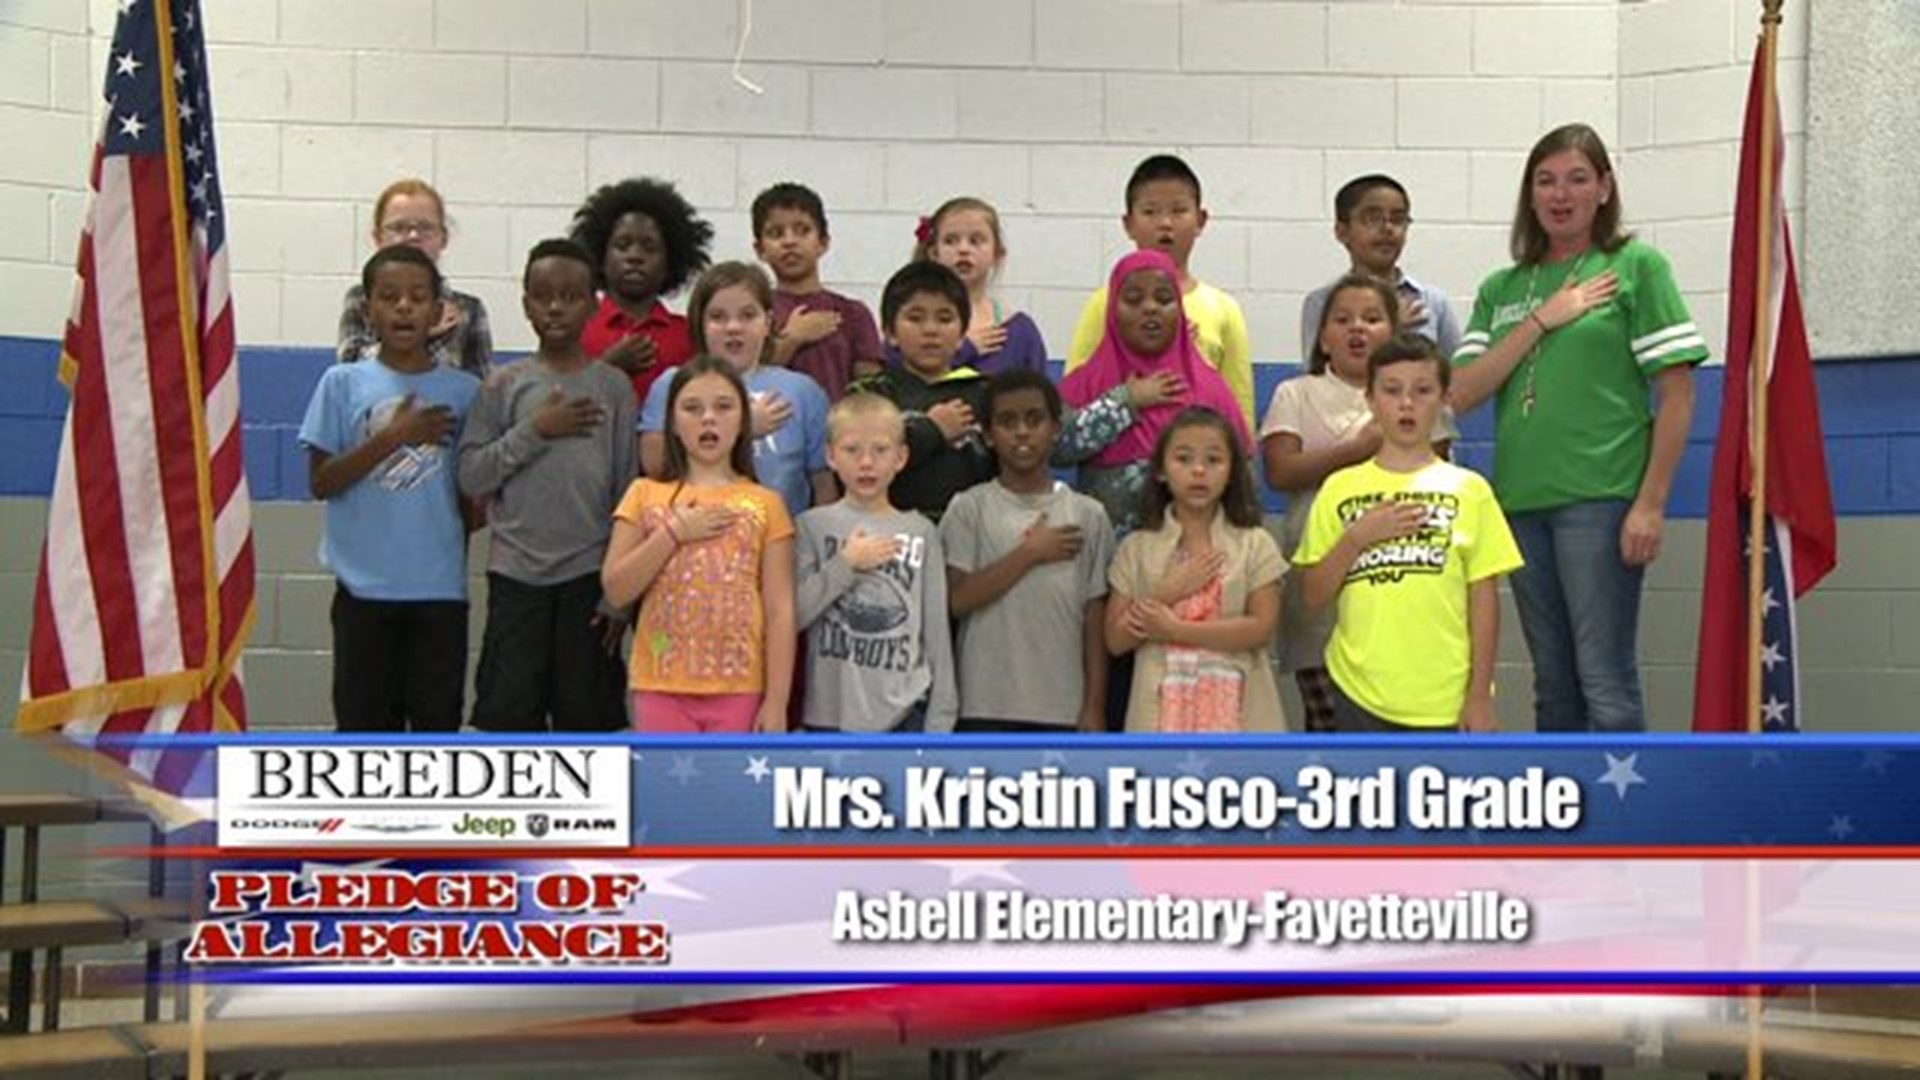 Mrs. Kristin Fusco  3rd Grade  Asbell Elementary  Fayetteville